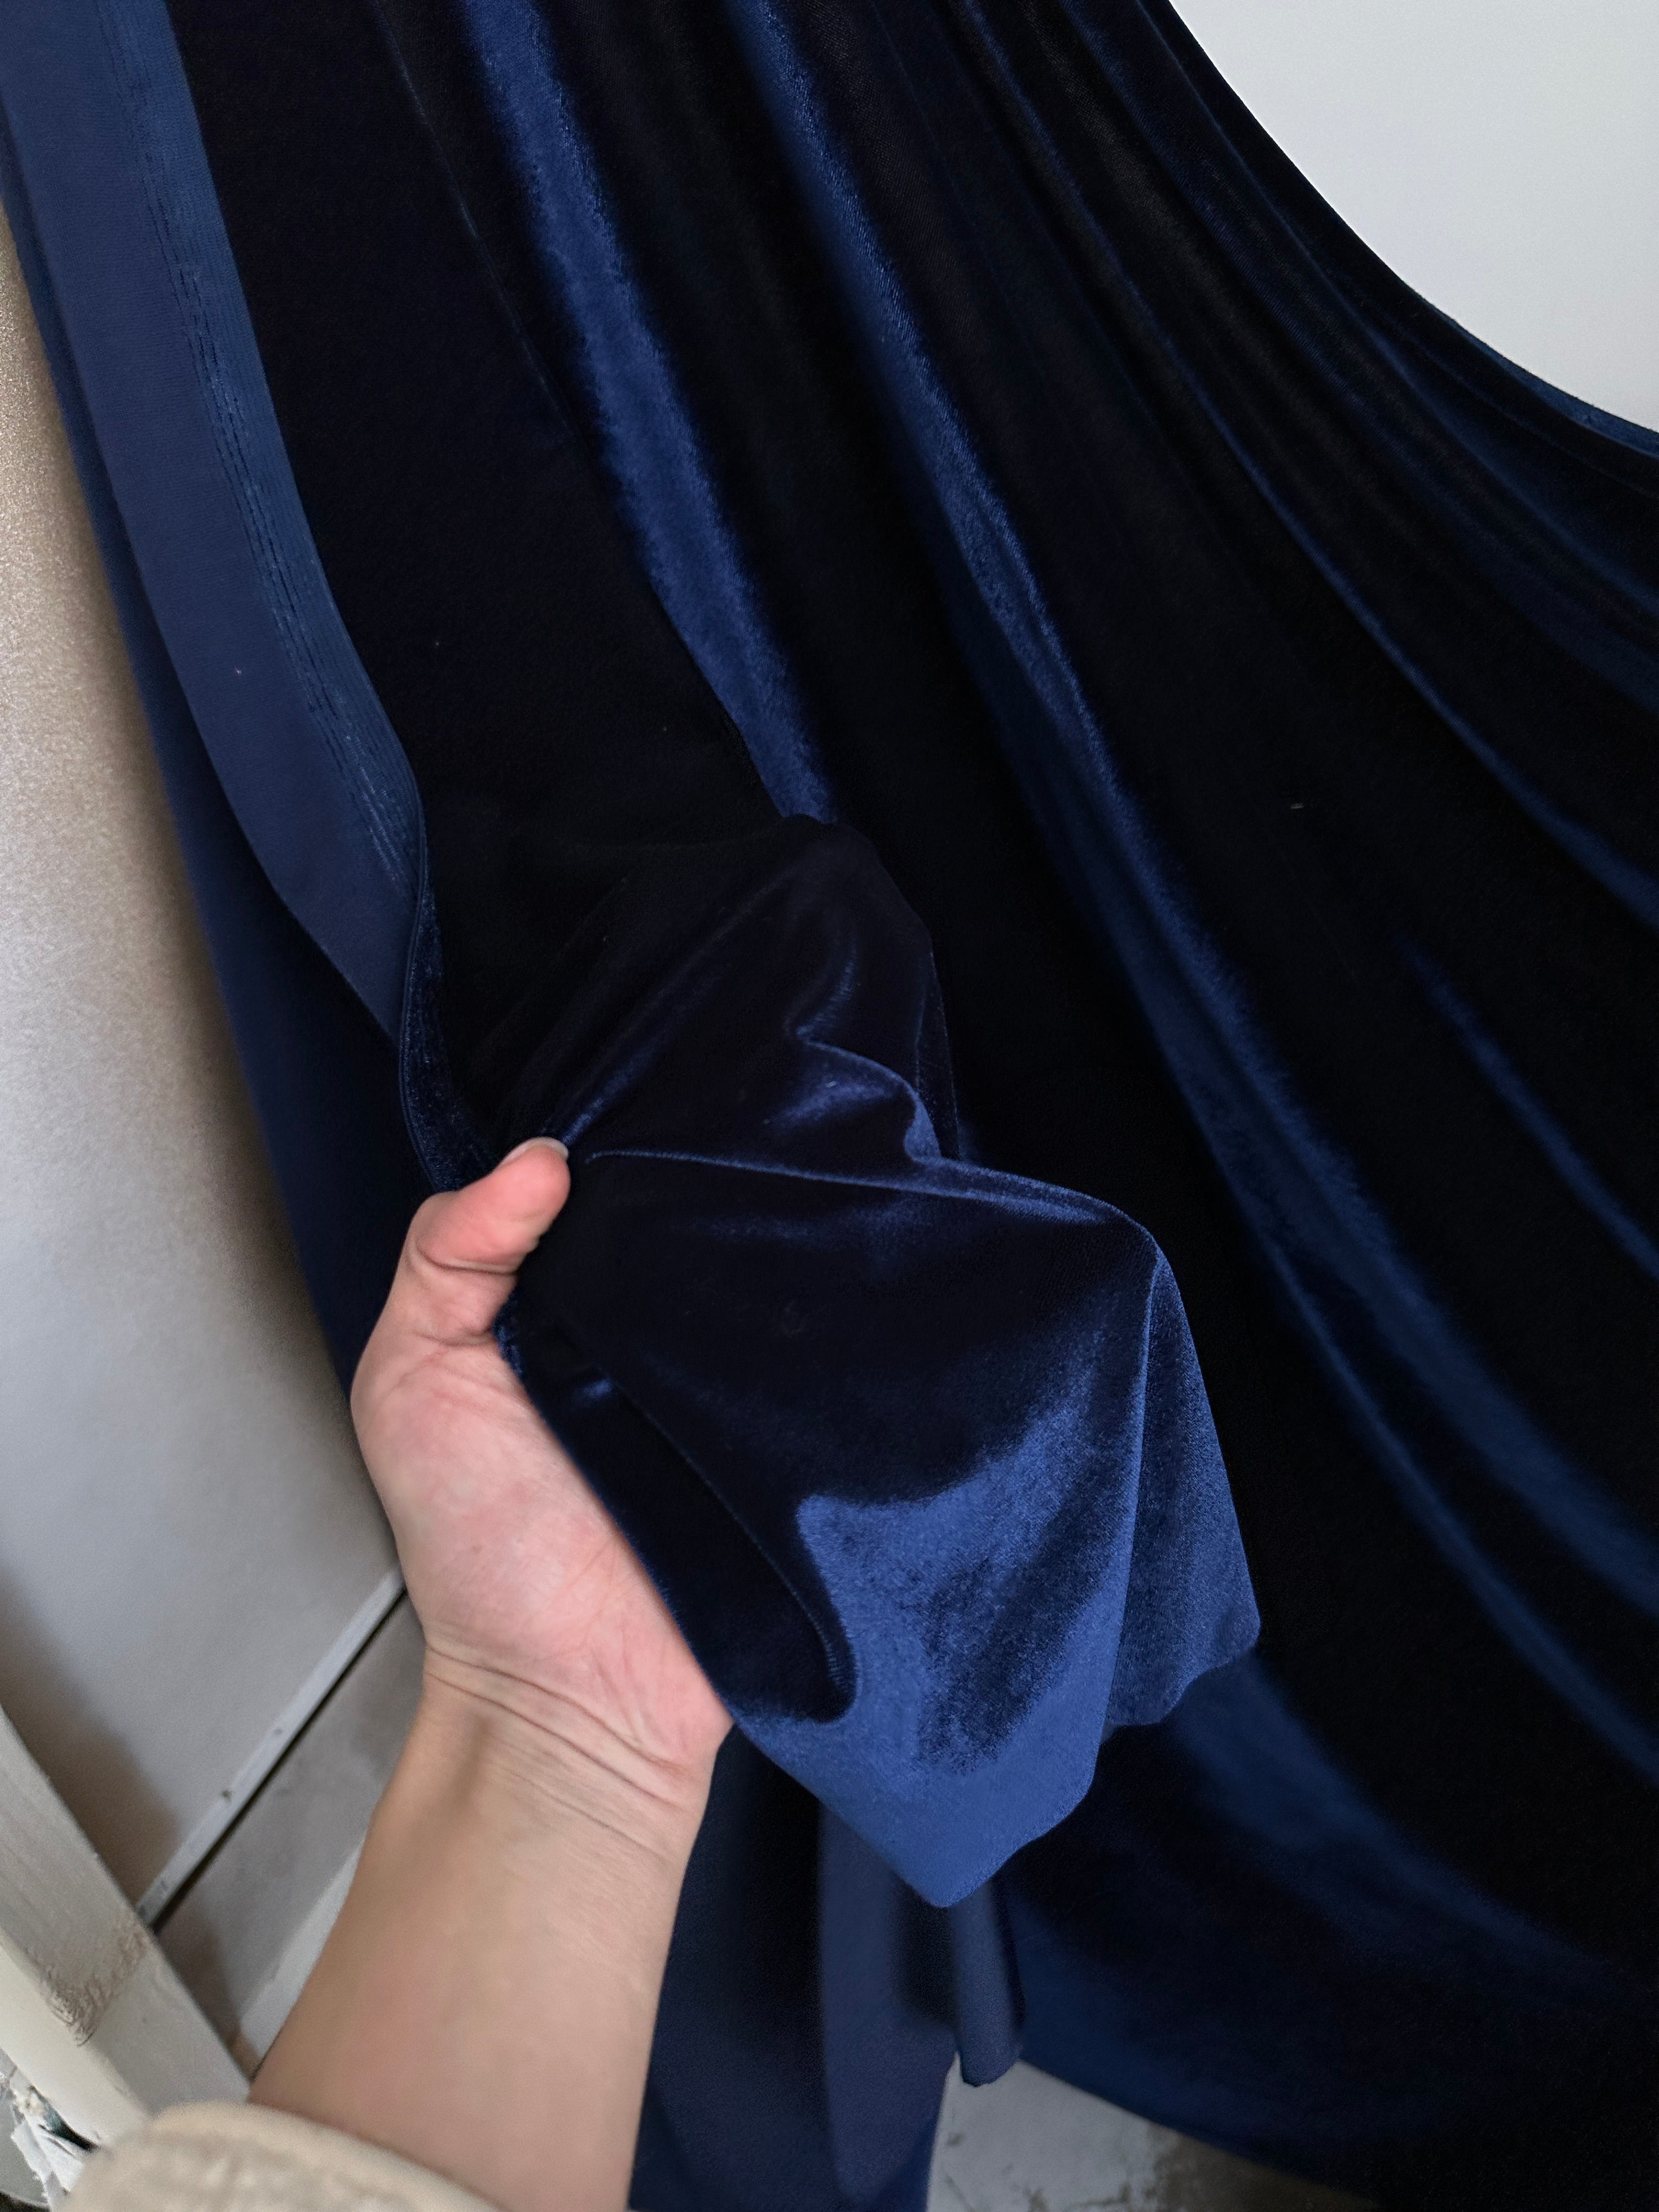 Navy stretch velvet, navy blue velvet for woman, navy bridal fabric, bridal fabric in blue, dark blue velvet, light blue vevlet, velvet on sale, discounted velvet, buy velvet online, velvet for gown, velvet for dress, luxury velvet